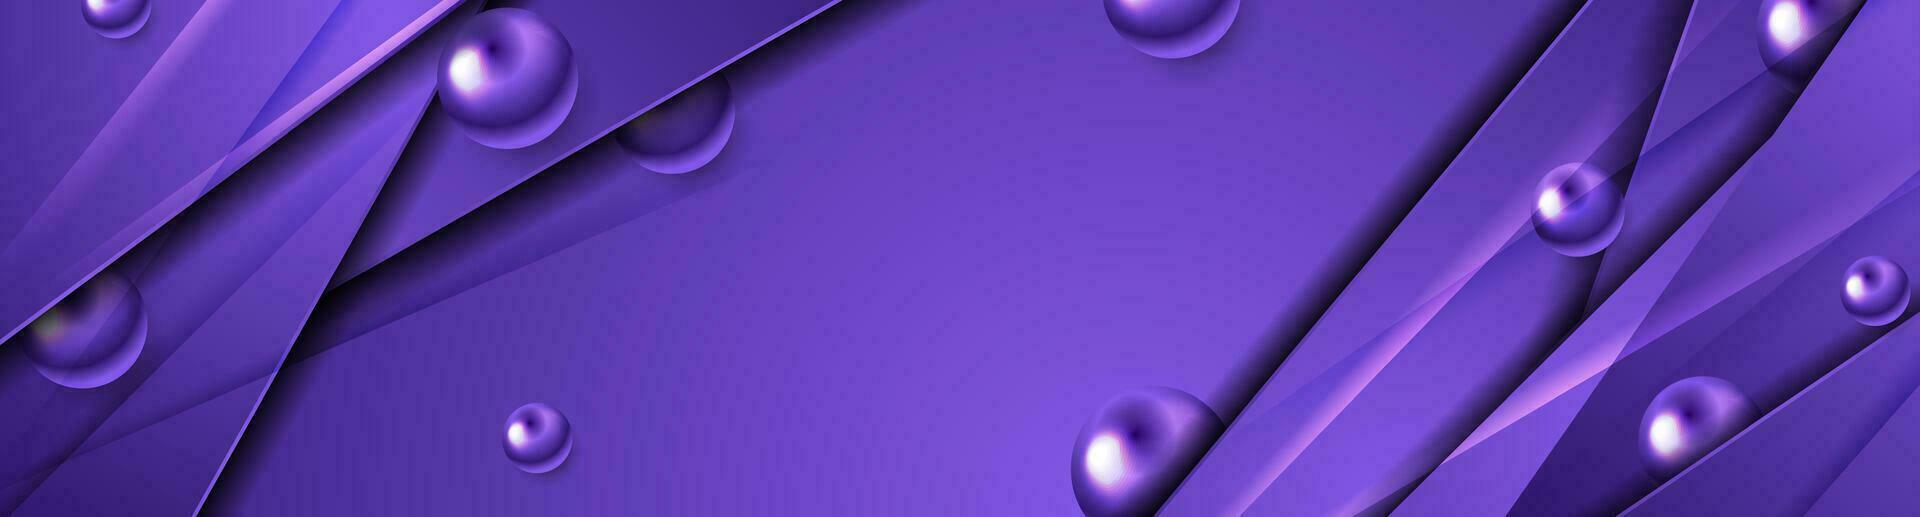 Hi-Tech violett Banner mit glänzend Streifen und Perlen vektor